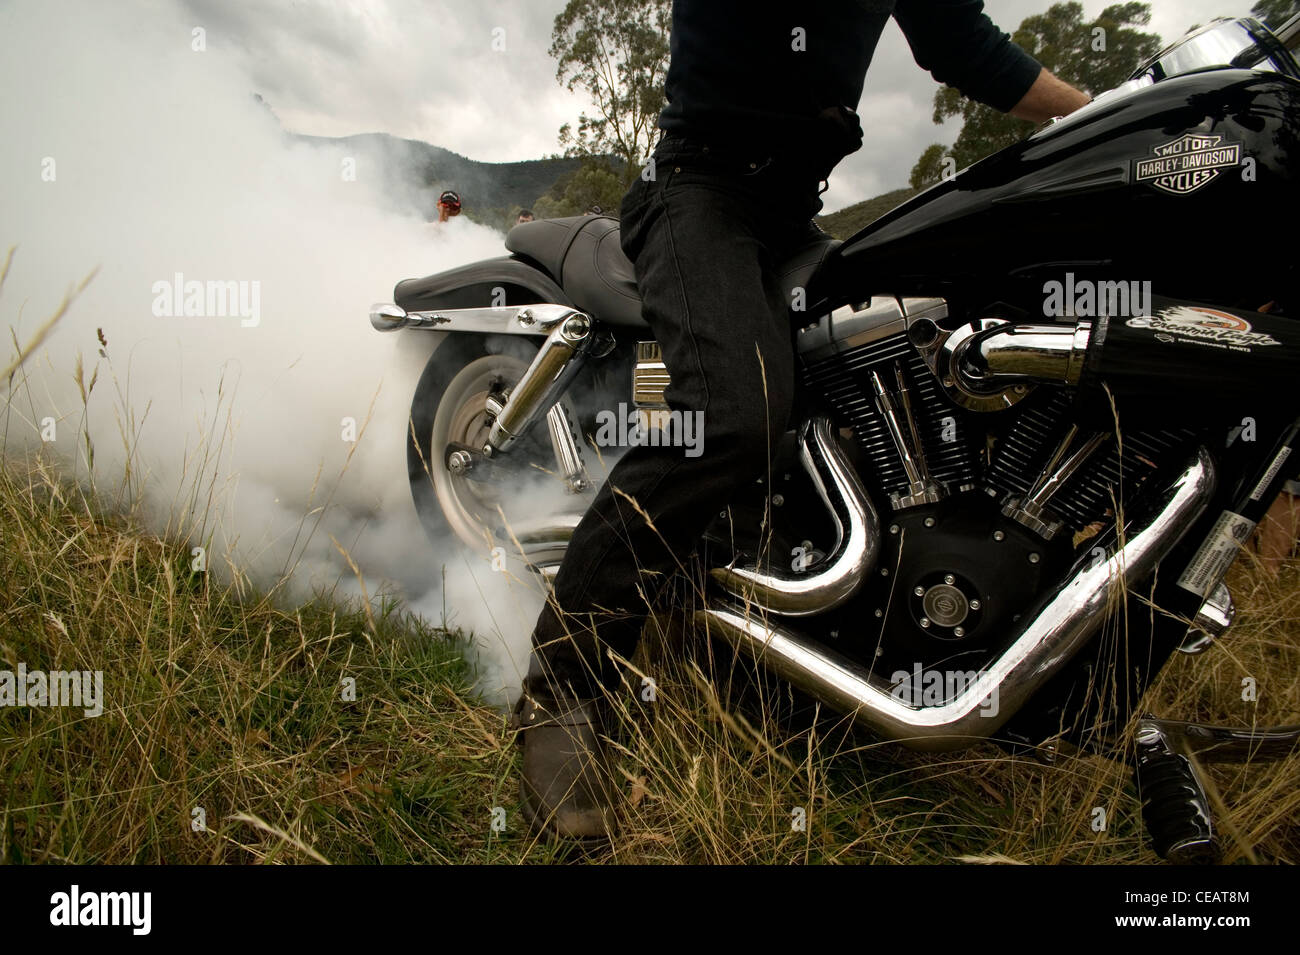 Motorcycle burnout immagini e fotografie stock ad alta risoluzione - Alamy